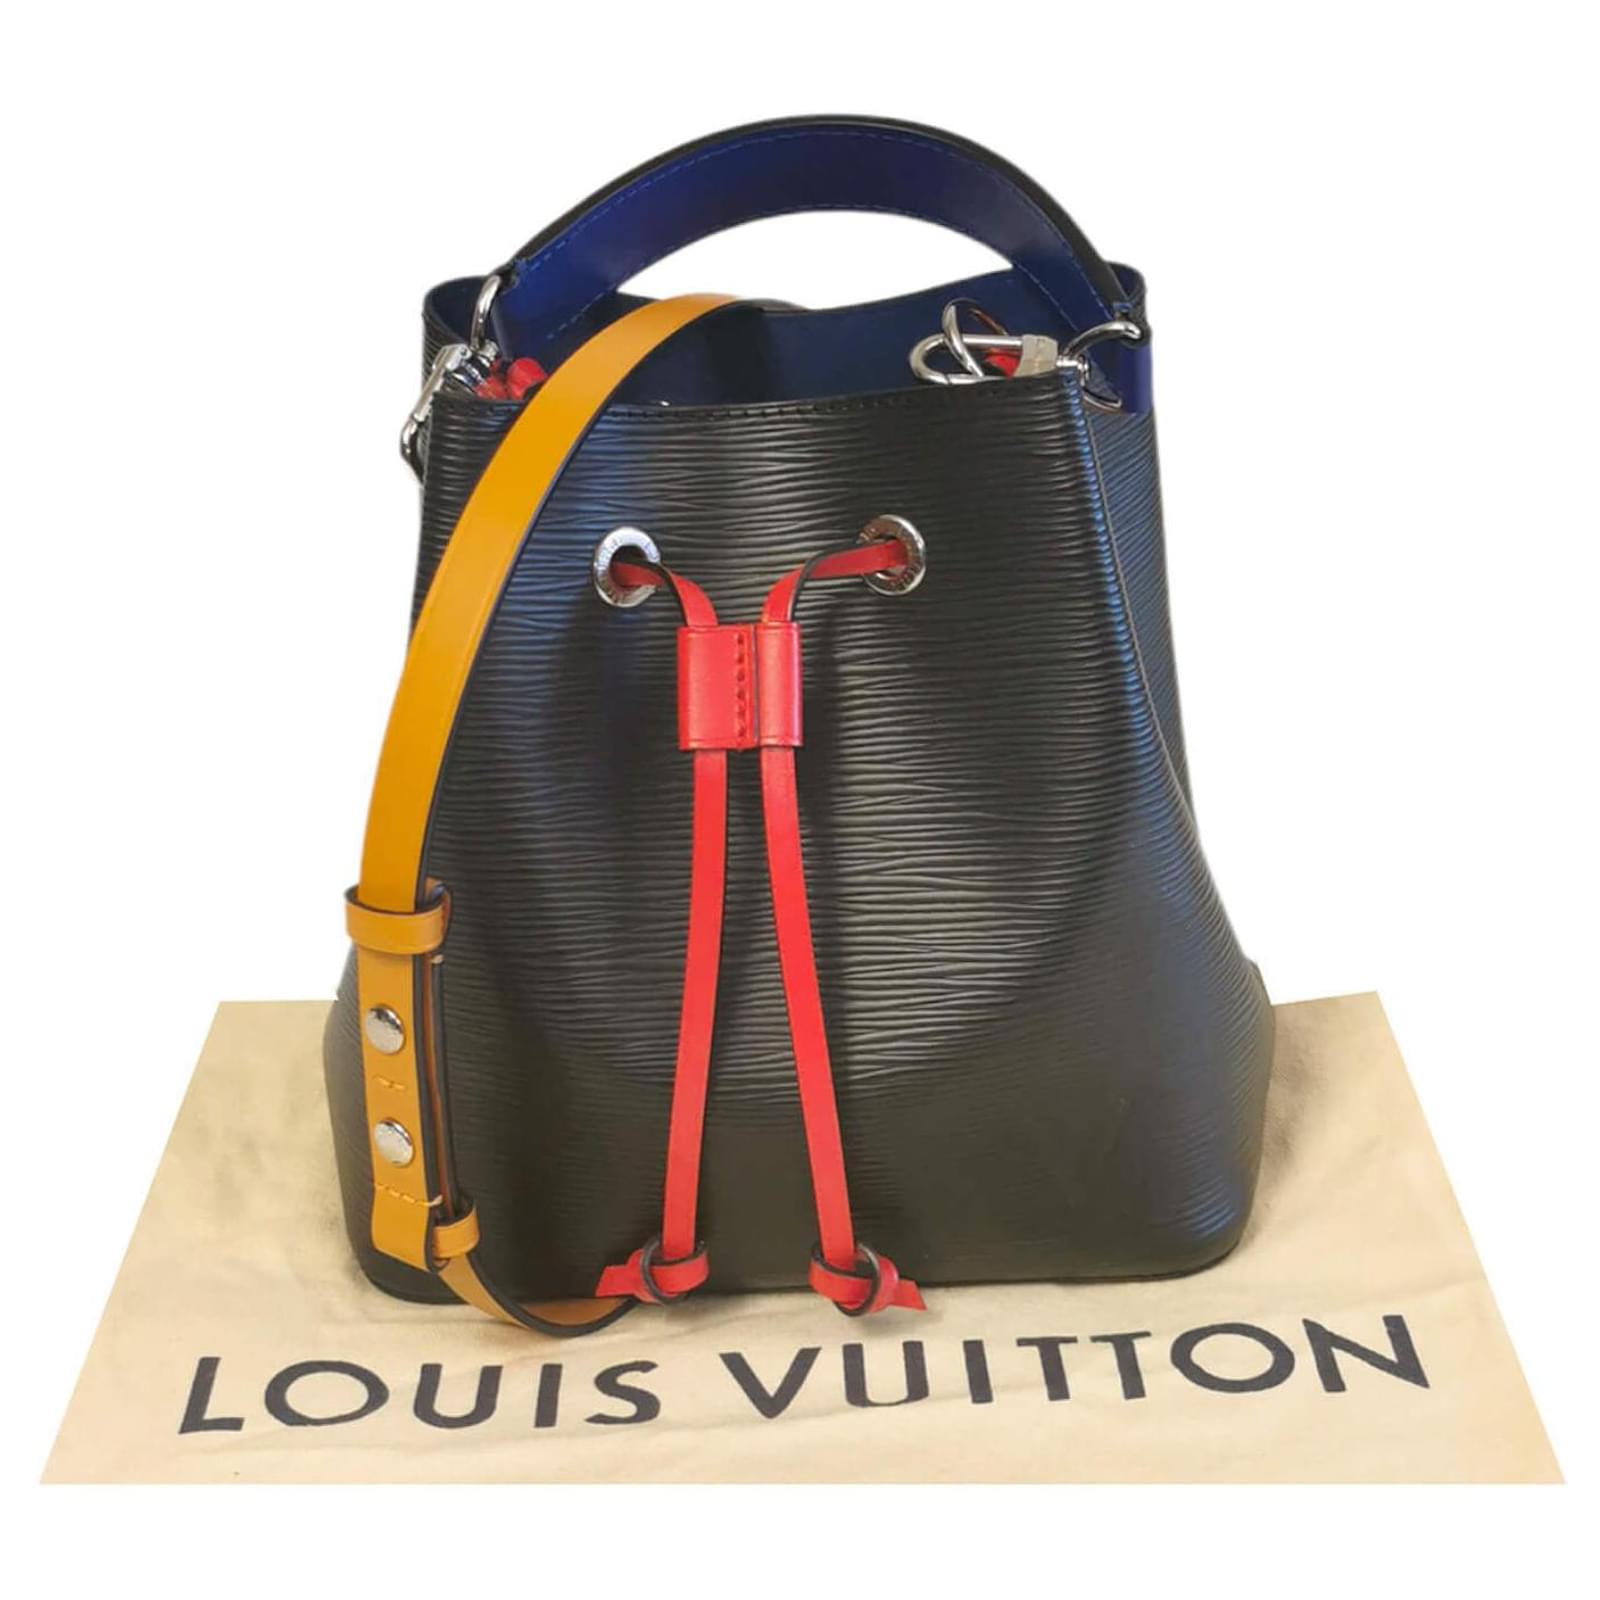 LOUIS VUITTON Louis Vuitton Neonoe BB epi leather shoulder bag